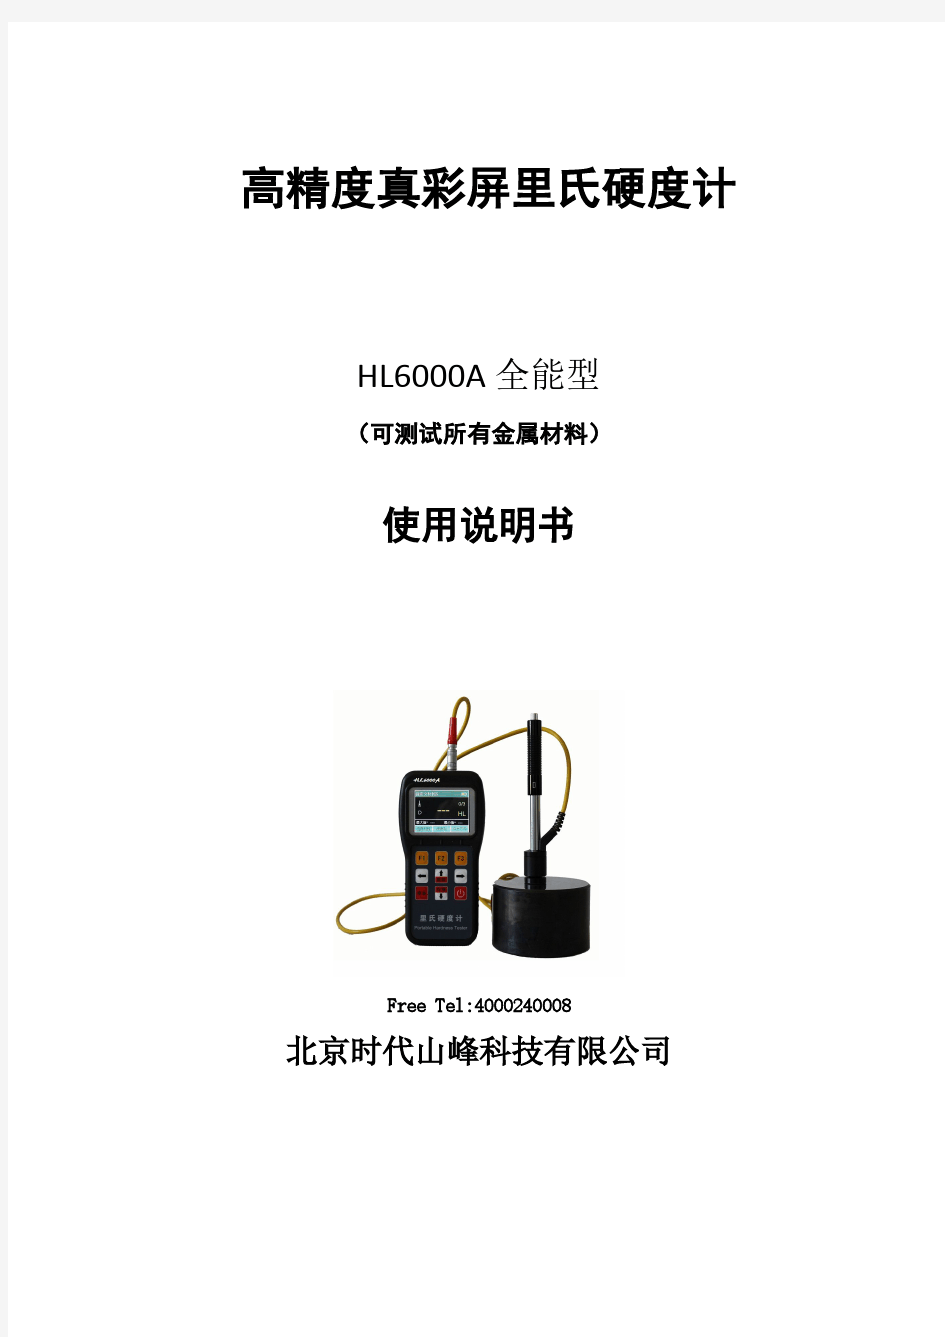 HL6000A便携式里氏硬度计中文说明书(正文)A4